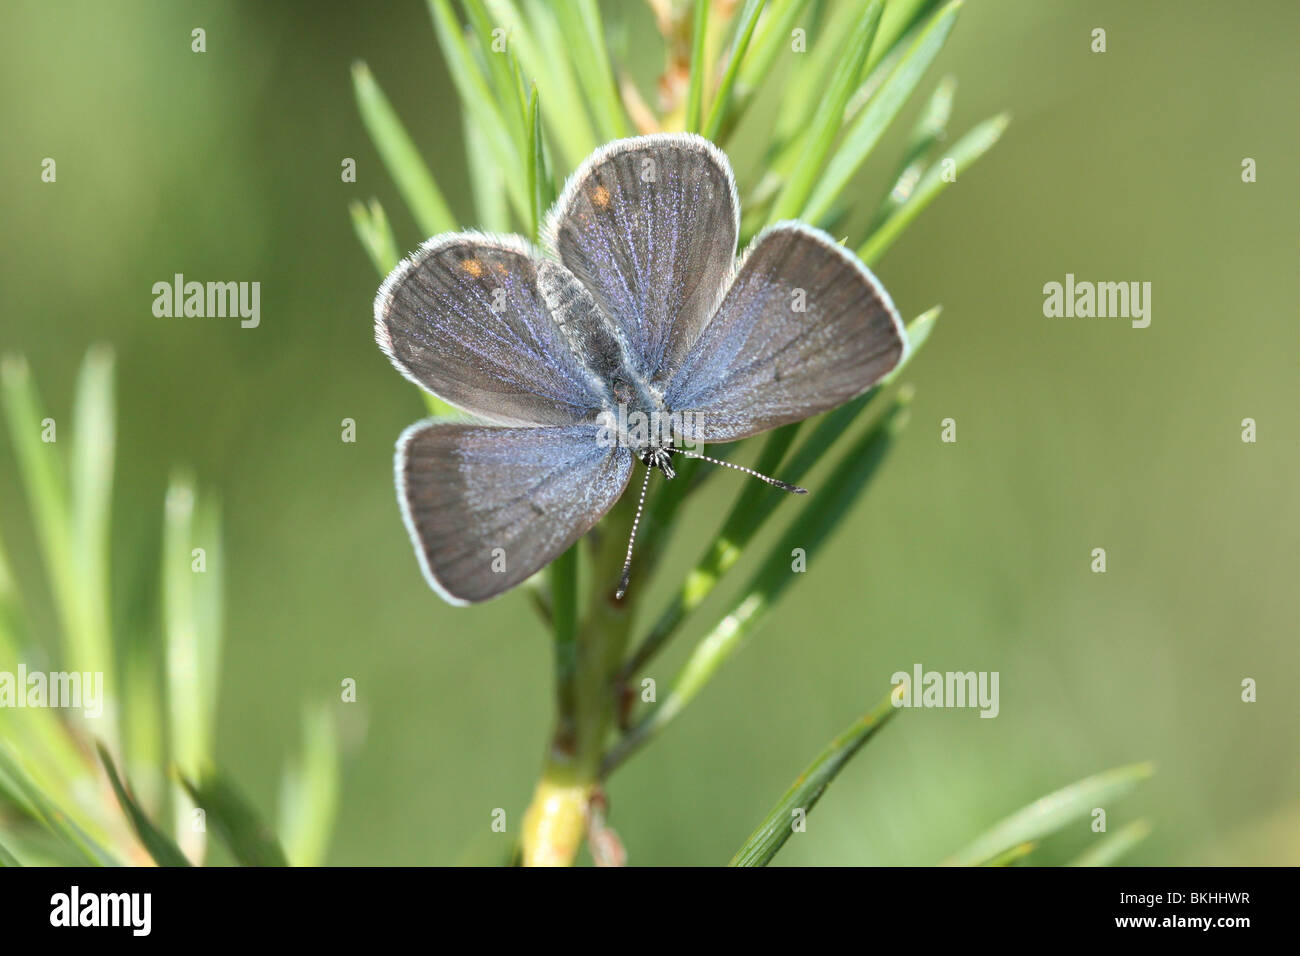 bovenaanzicht vrouwtje veenbesblauwtje op grove den; top view female cranberry blue on scots pine Stock Photo